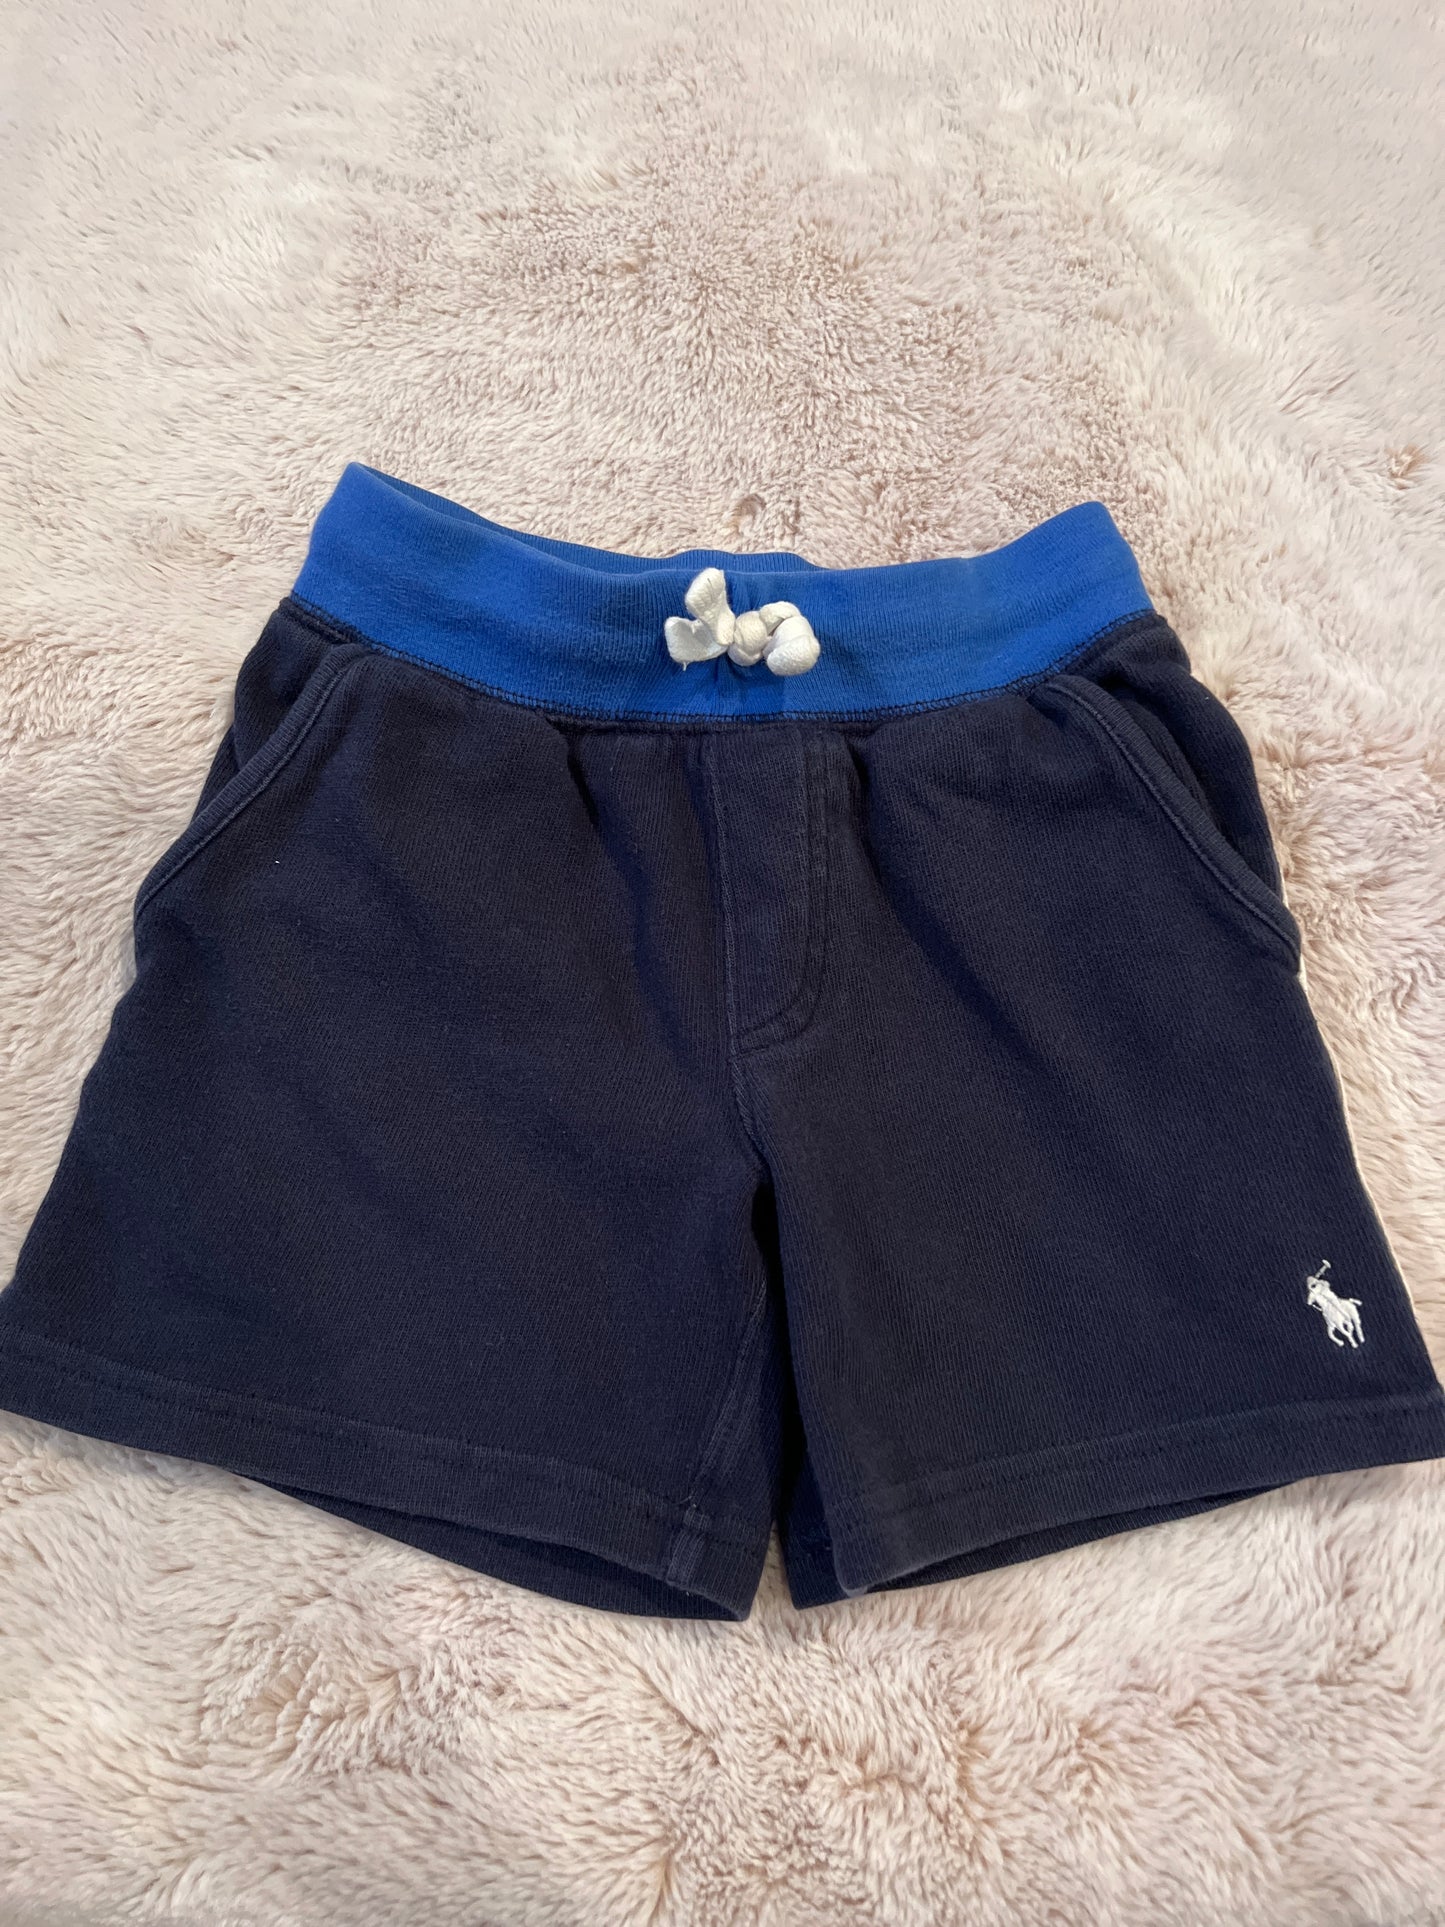 Boys navy Polo shorts 2/2T